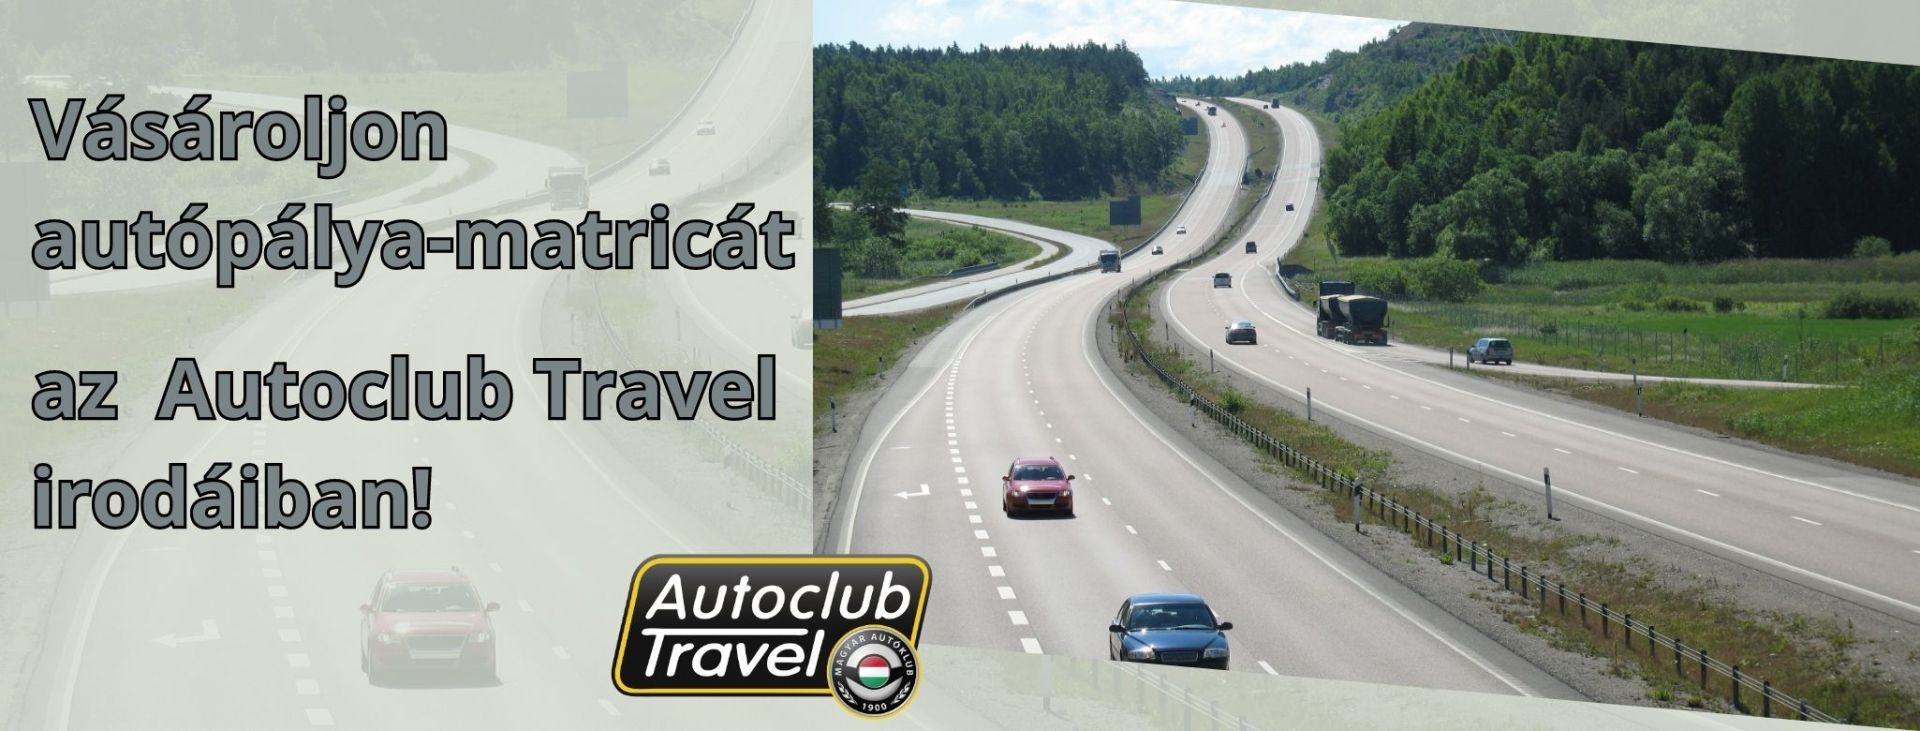 Magyarország, Ausztria, Svájc, vagy Szlovénia autópályáira érvényes autópálya-matricát vásárolhat az Autoclub Travel irodáiban!